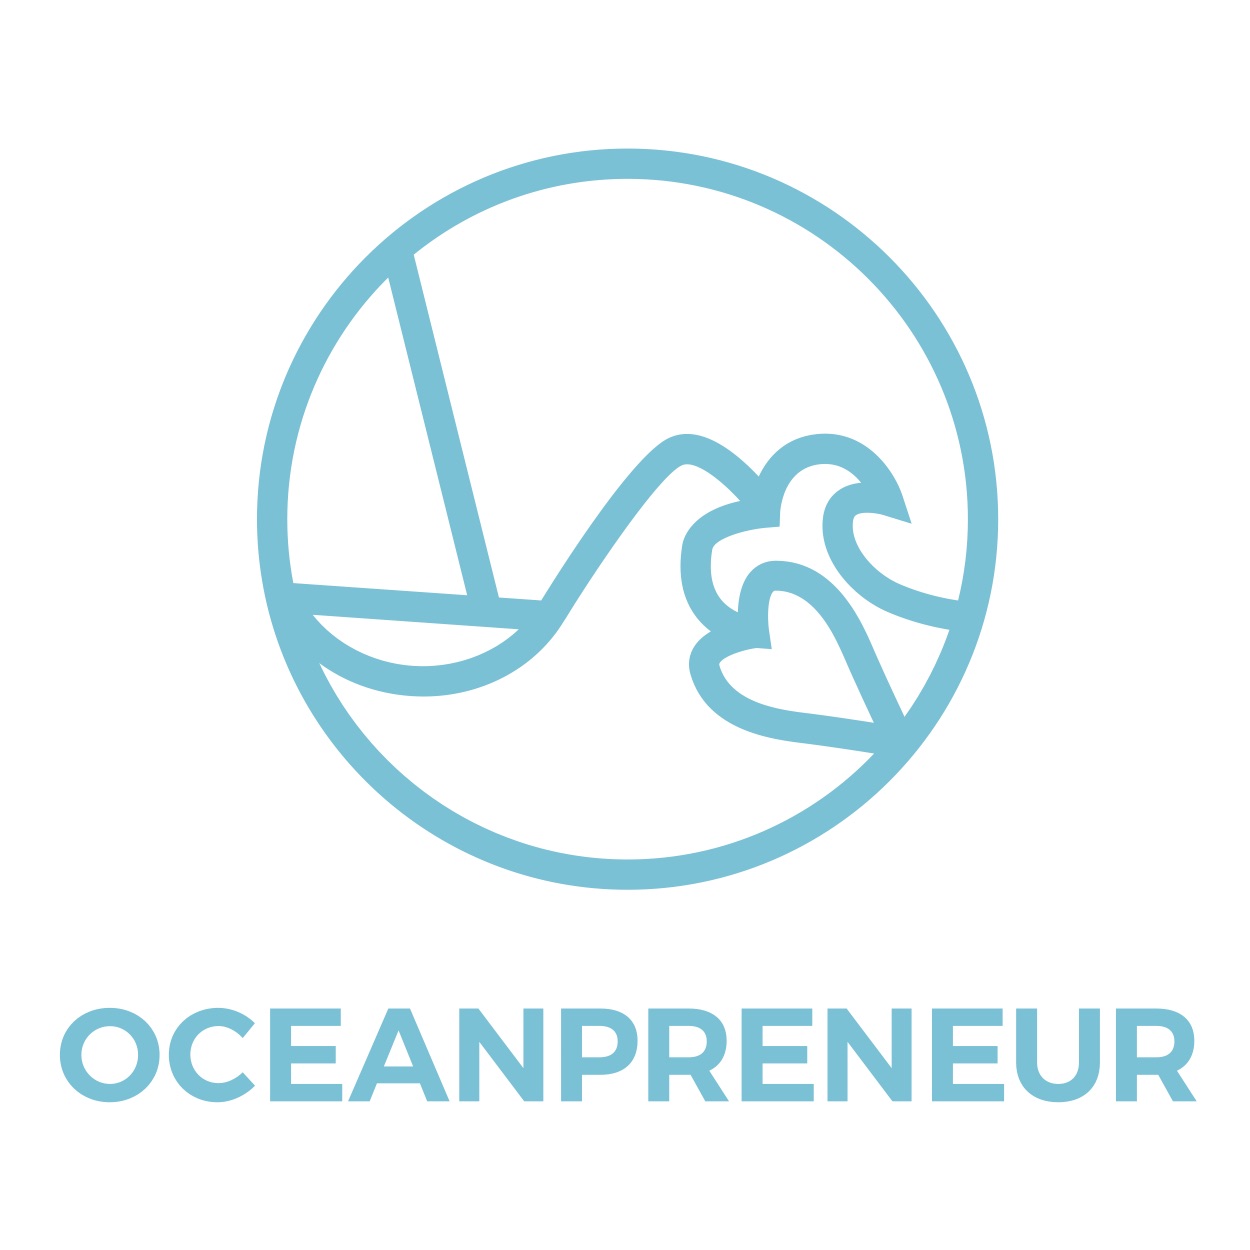 Oceanpreneur